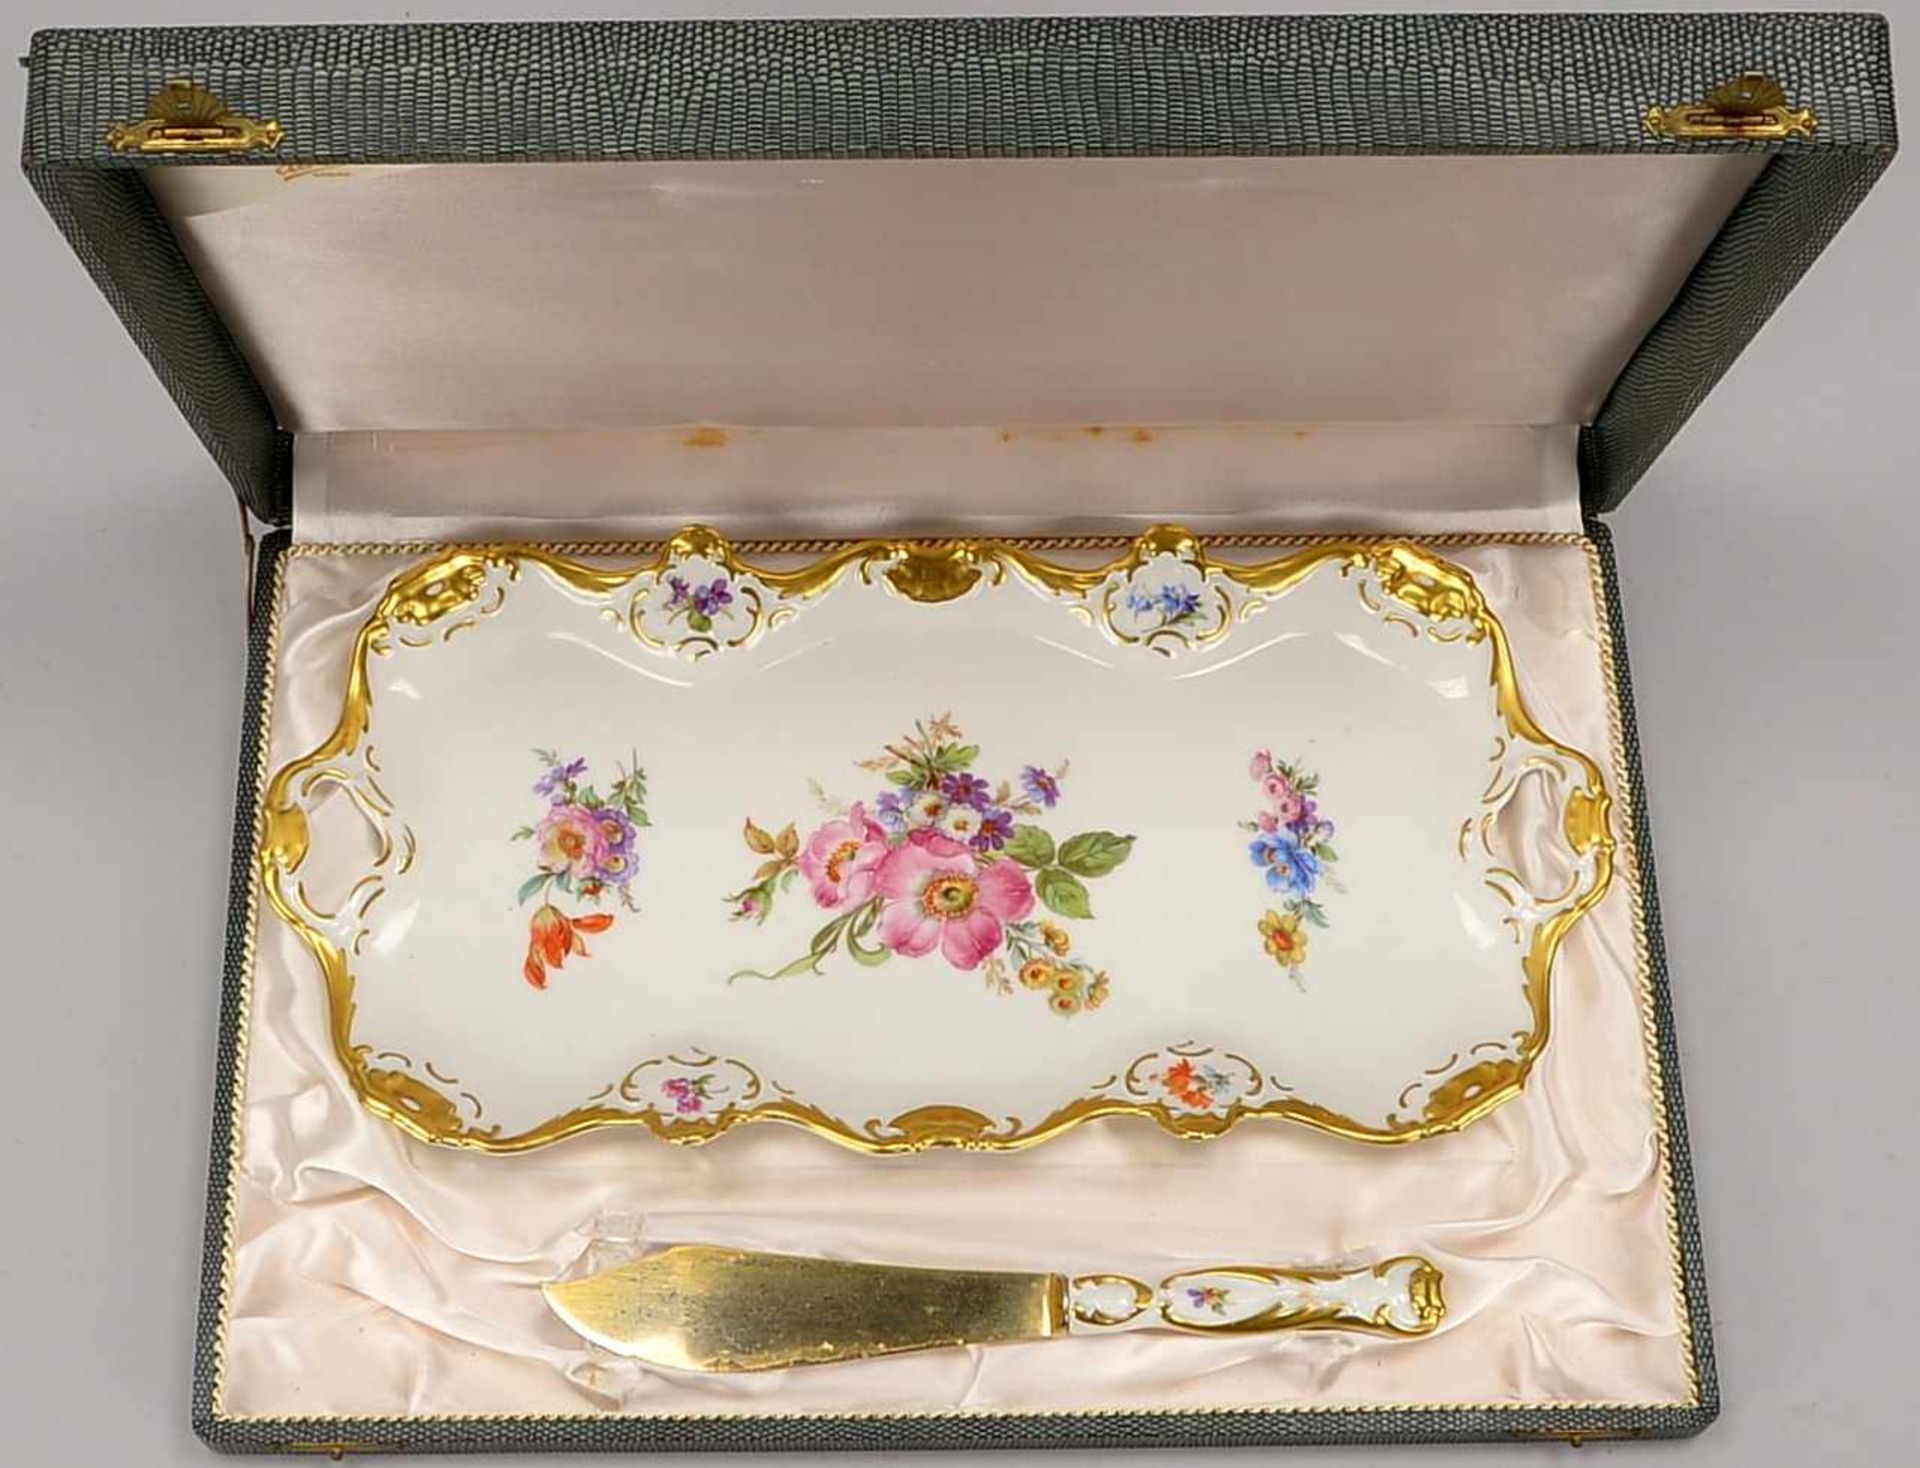 Bavaria Porzellan, Königskuchenplatte, mit Blumendekor und reichem Golddekor, Platte mit 2x - Bild 2 aus 3